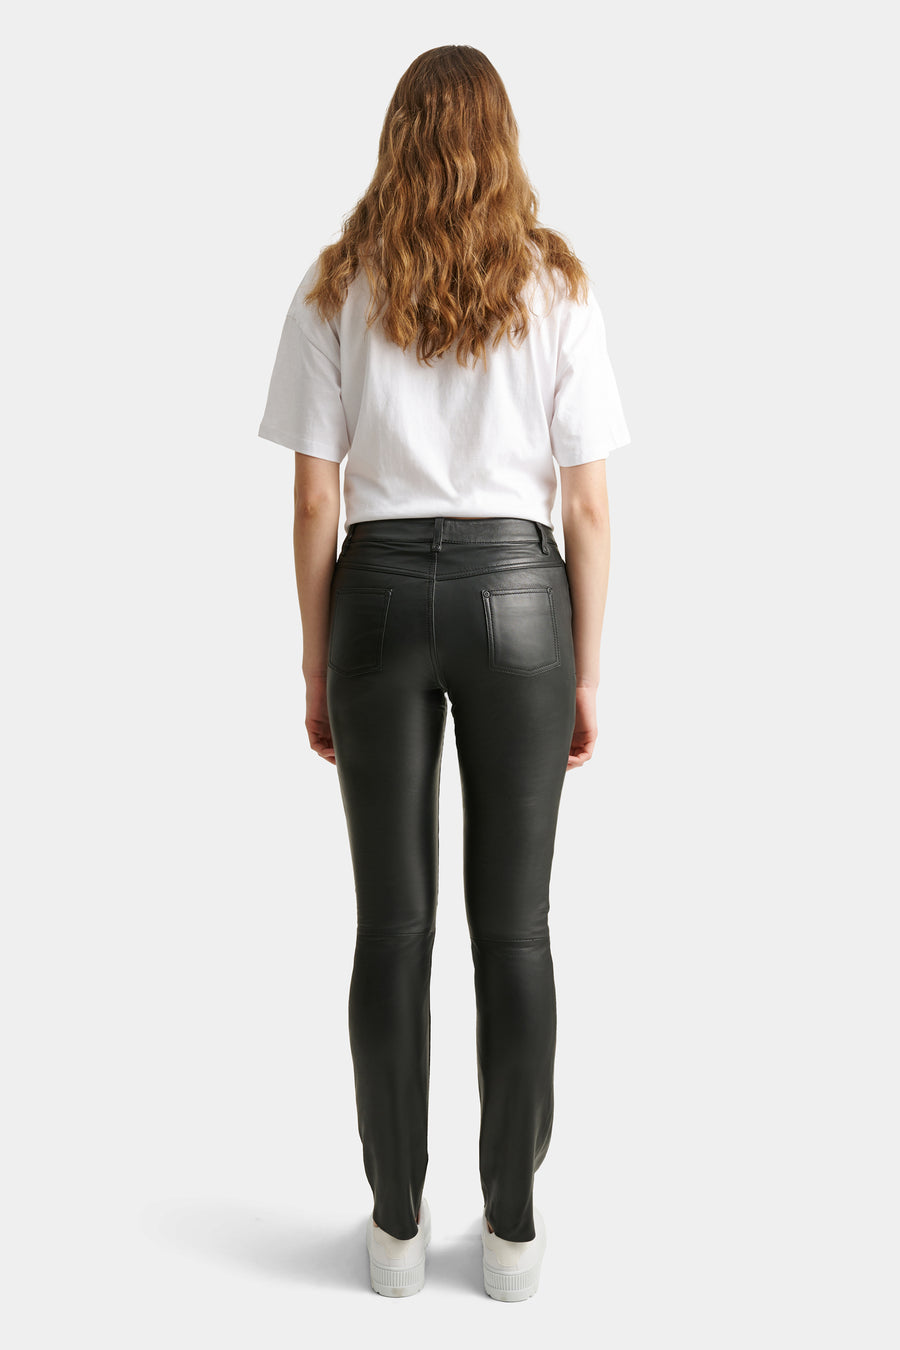 Rockandblue Leren broek Jeans Pants voor dames